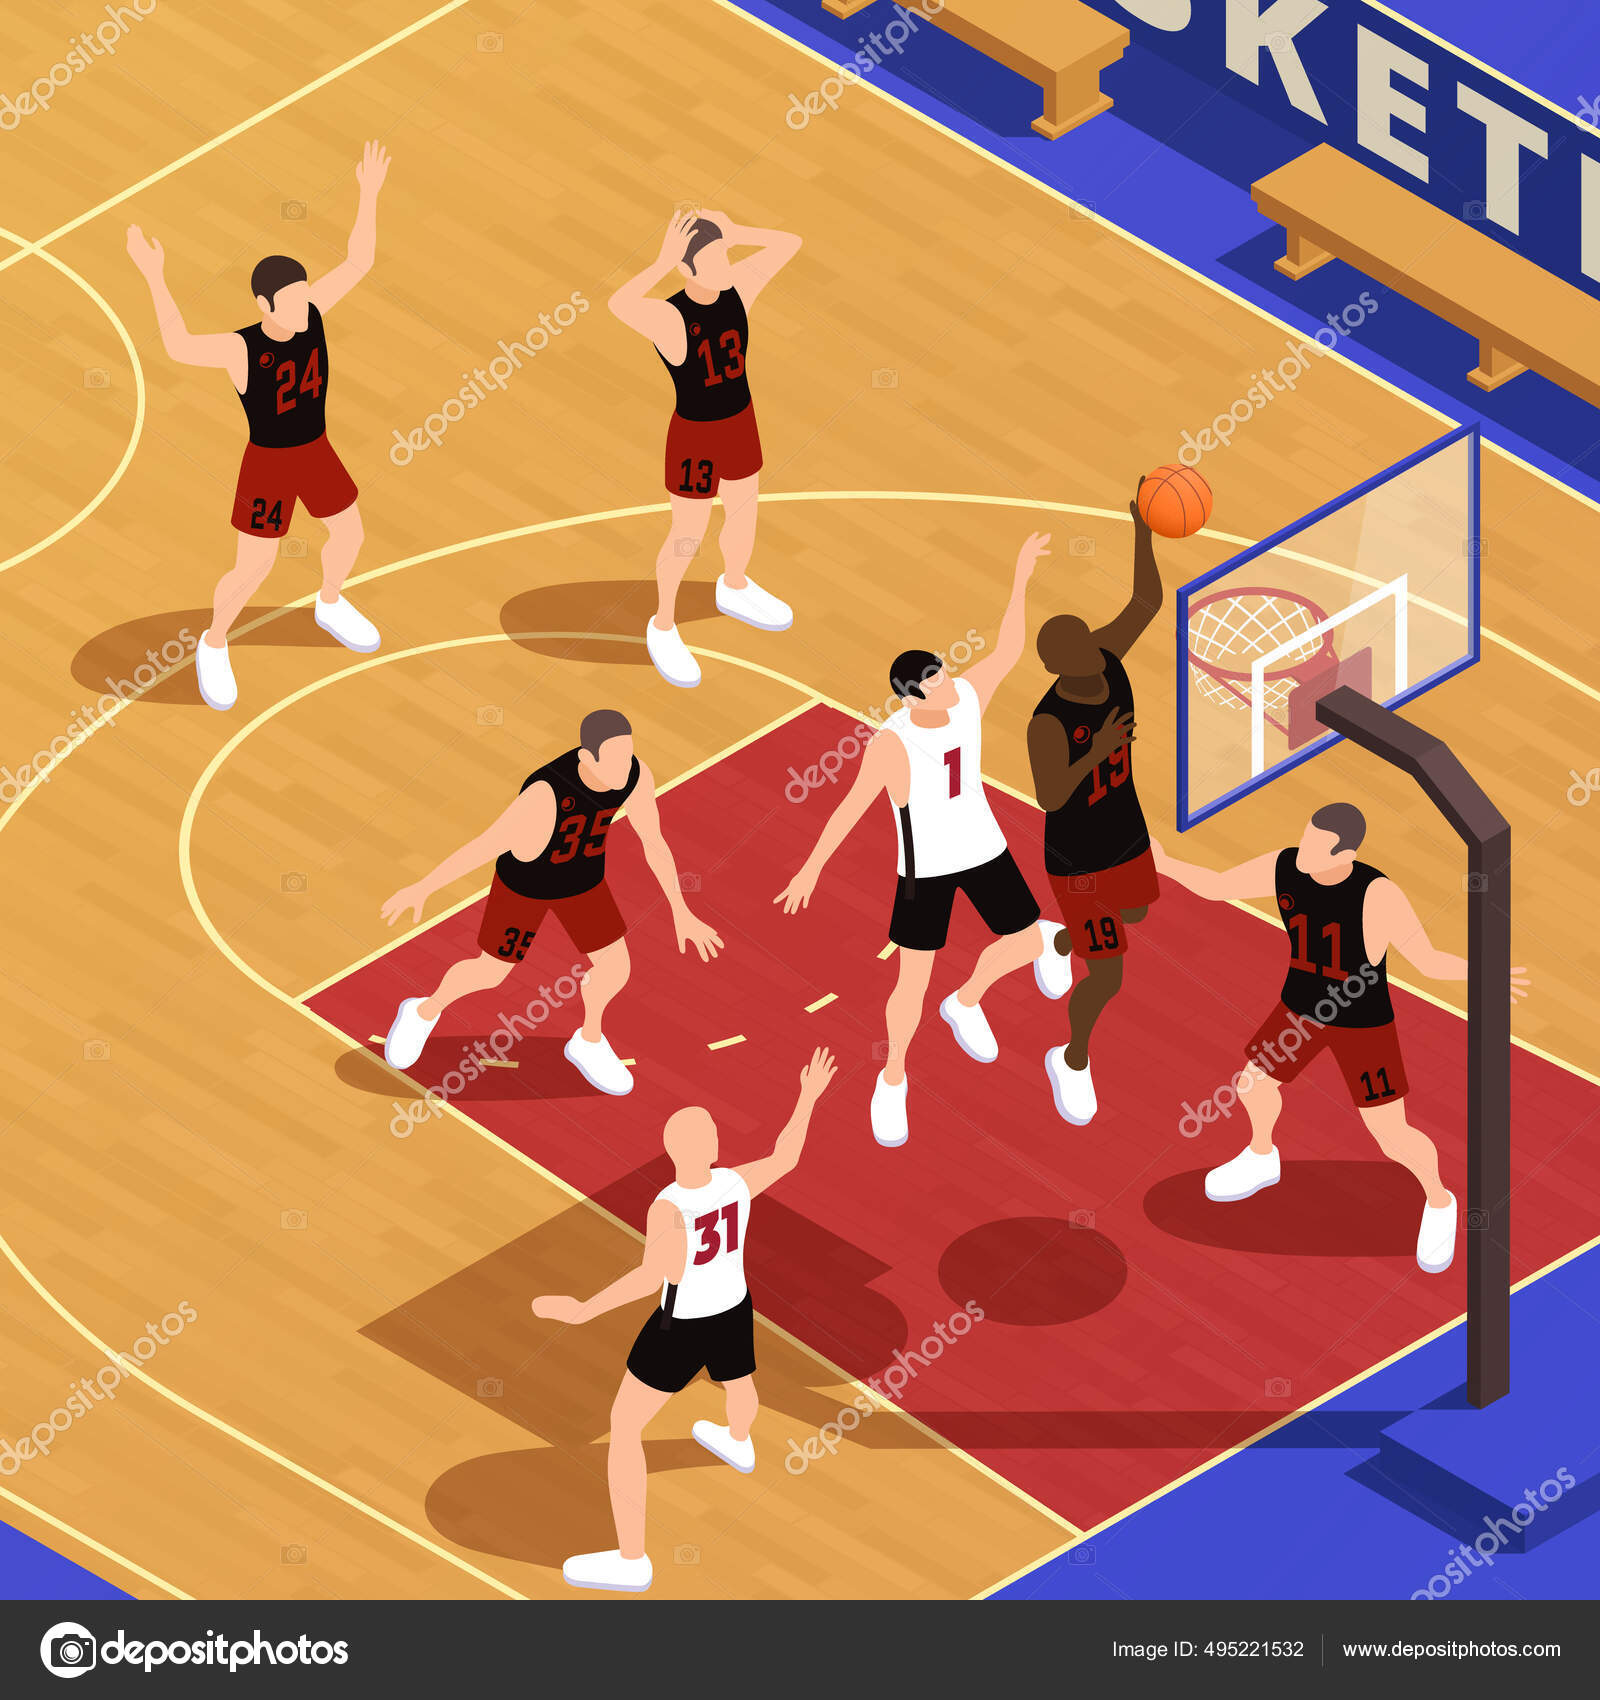 Pessoas jogando basquete na competição imagem vetorial de